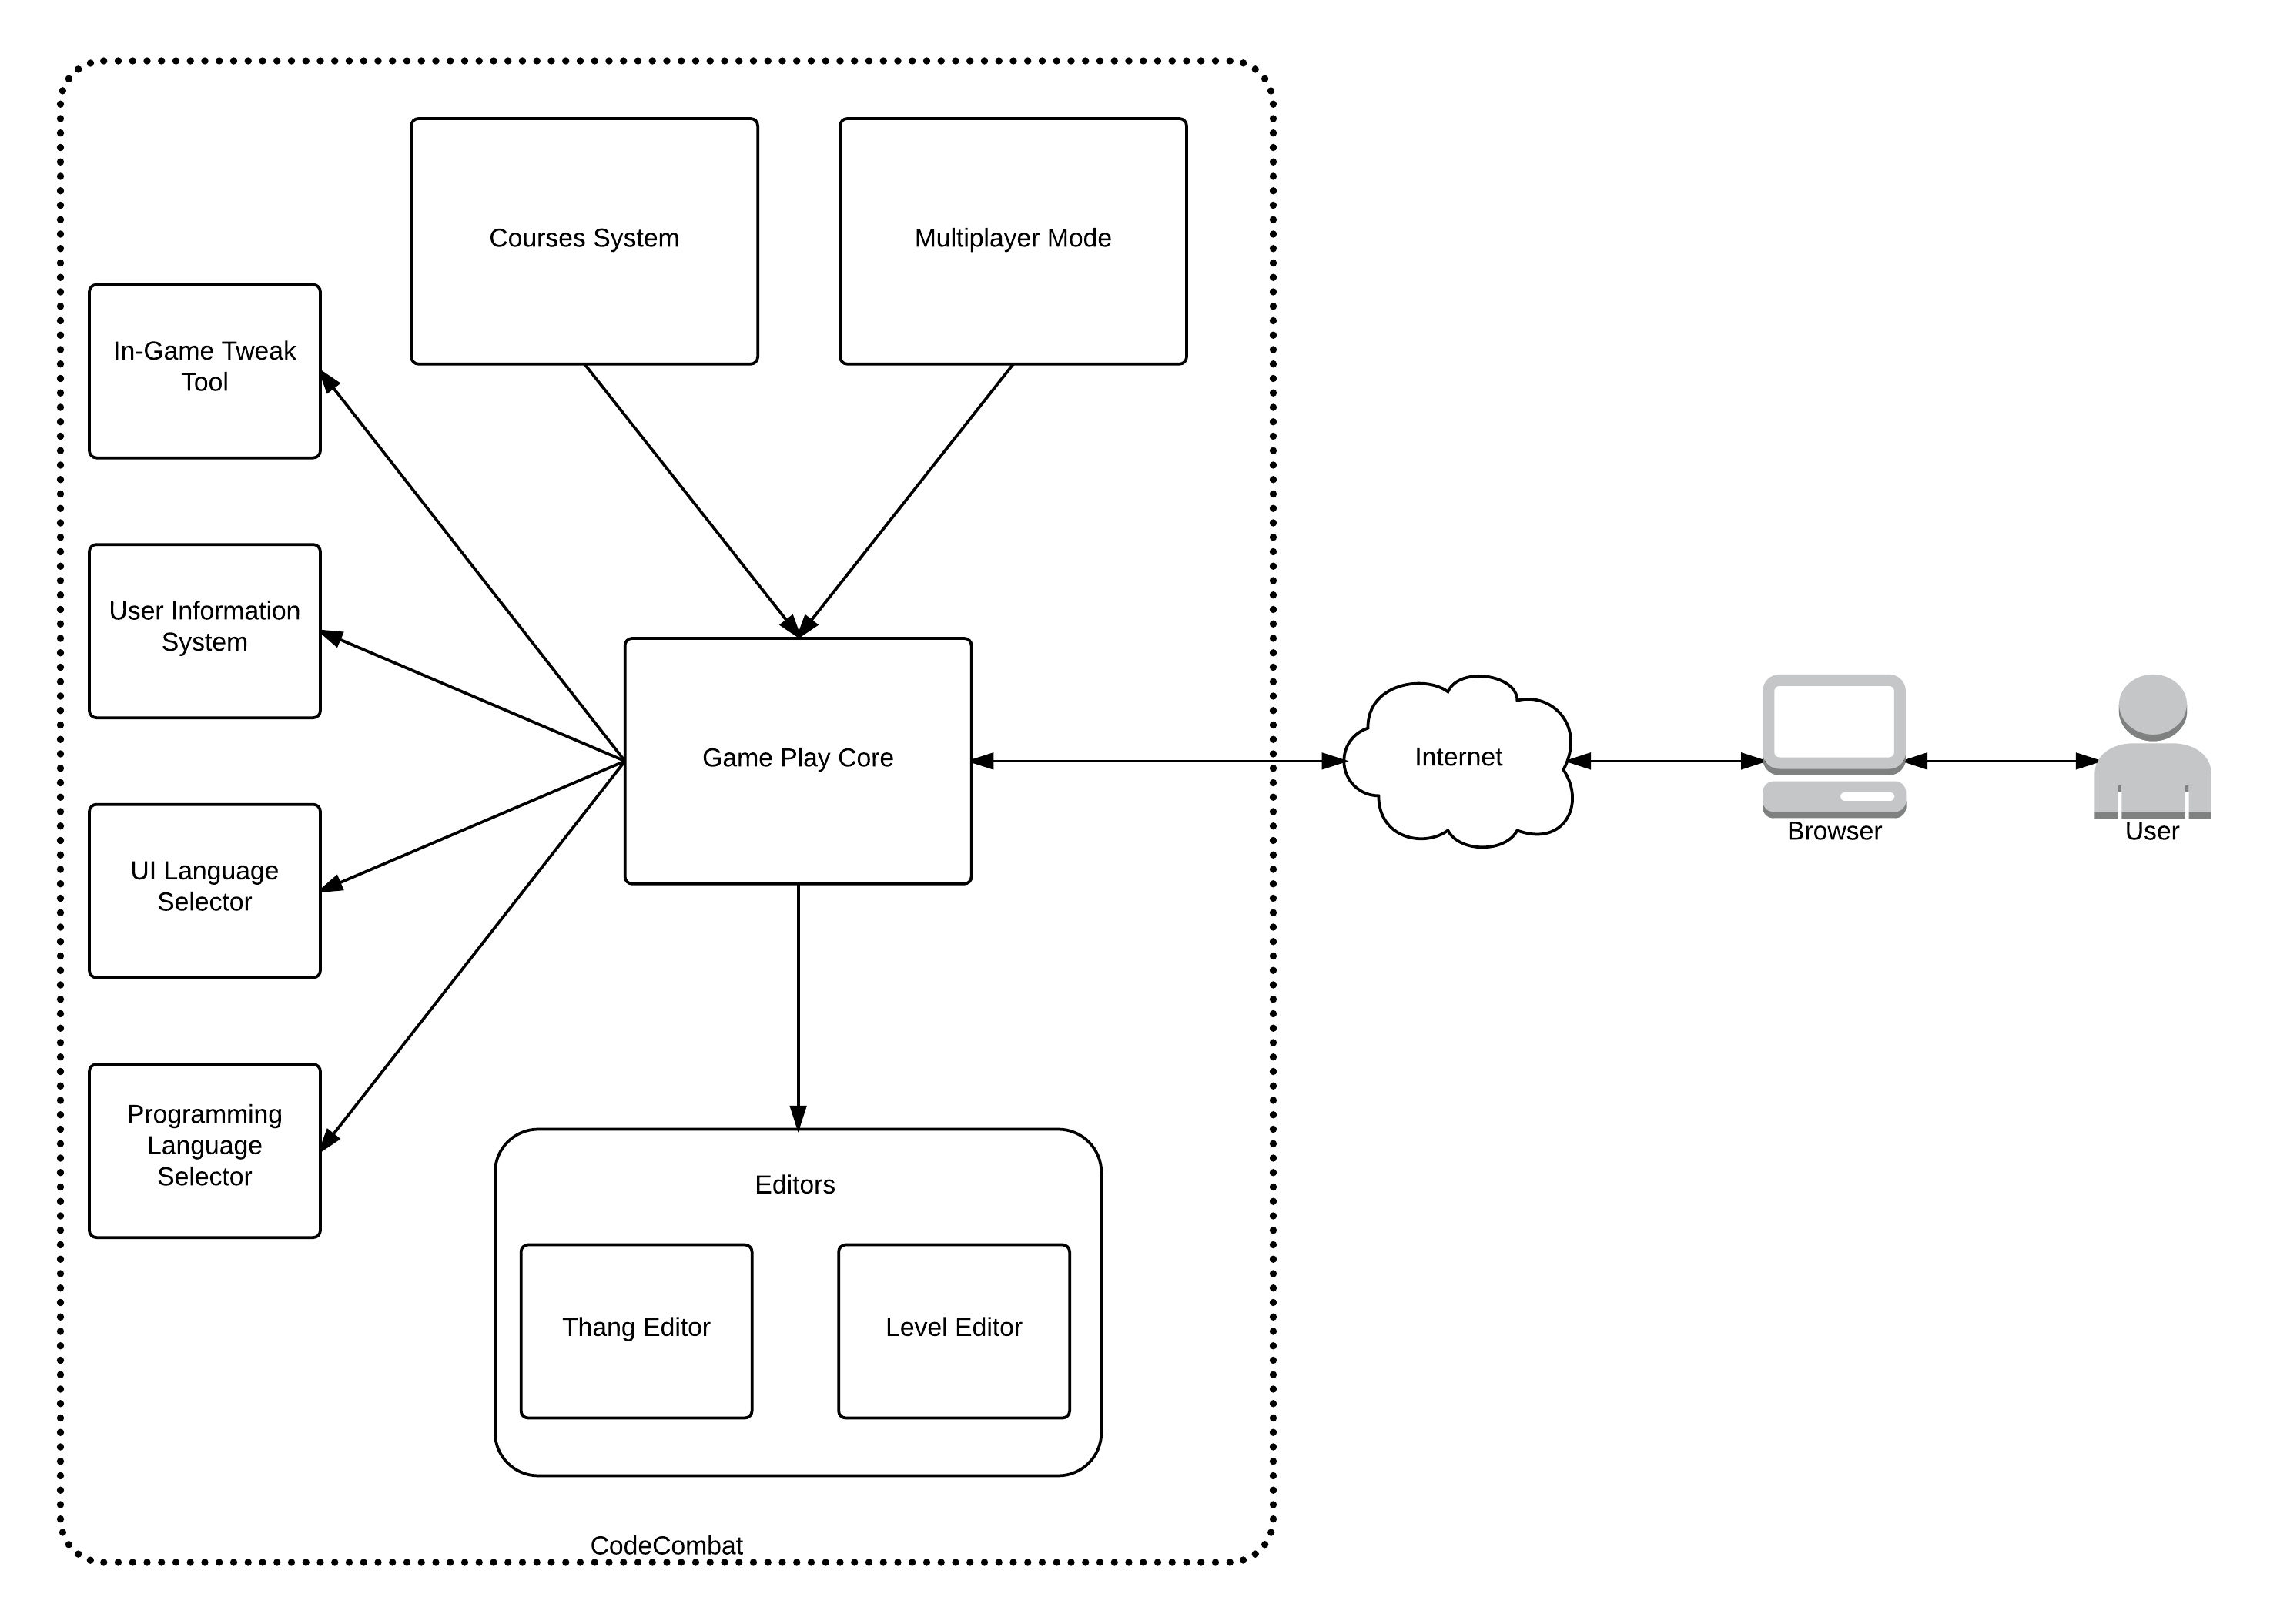 CodeCombat functional view diagram